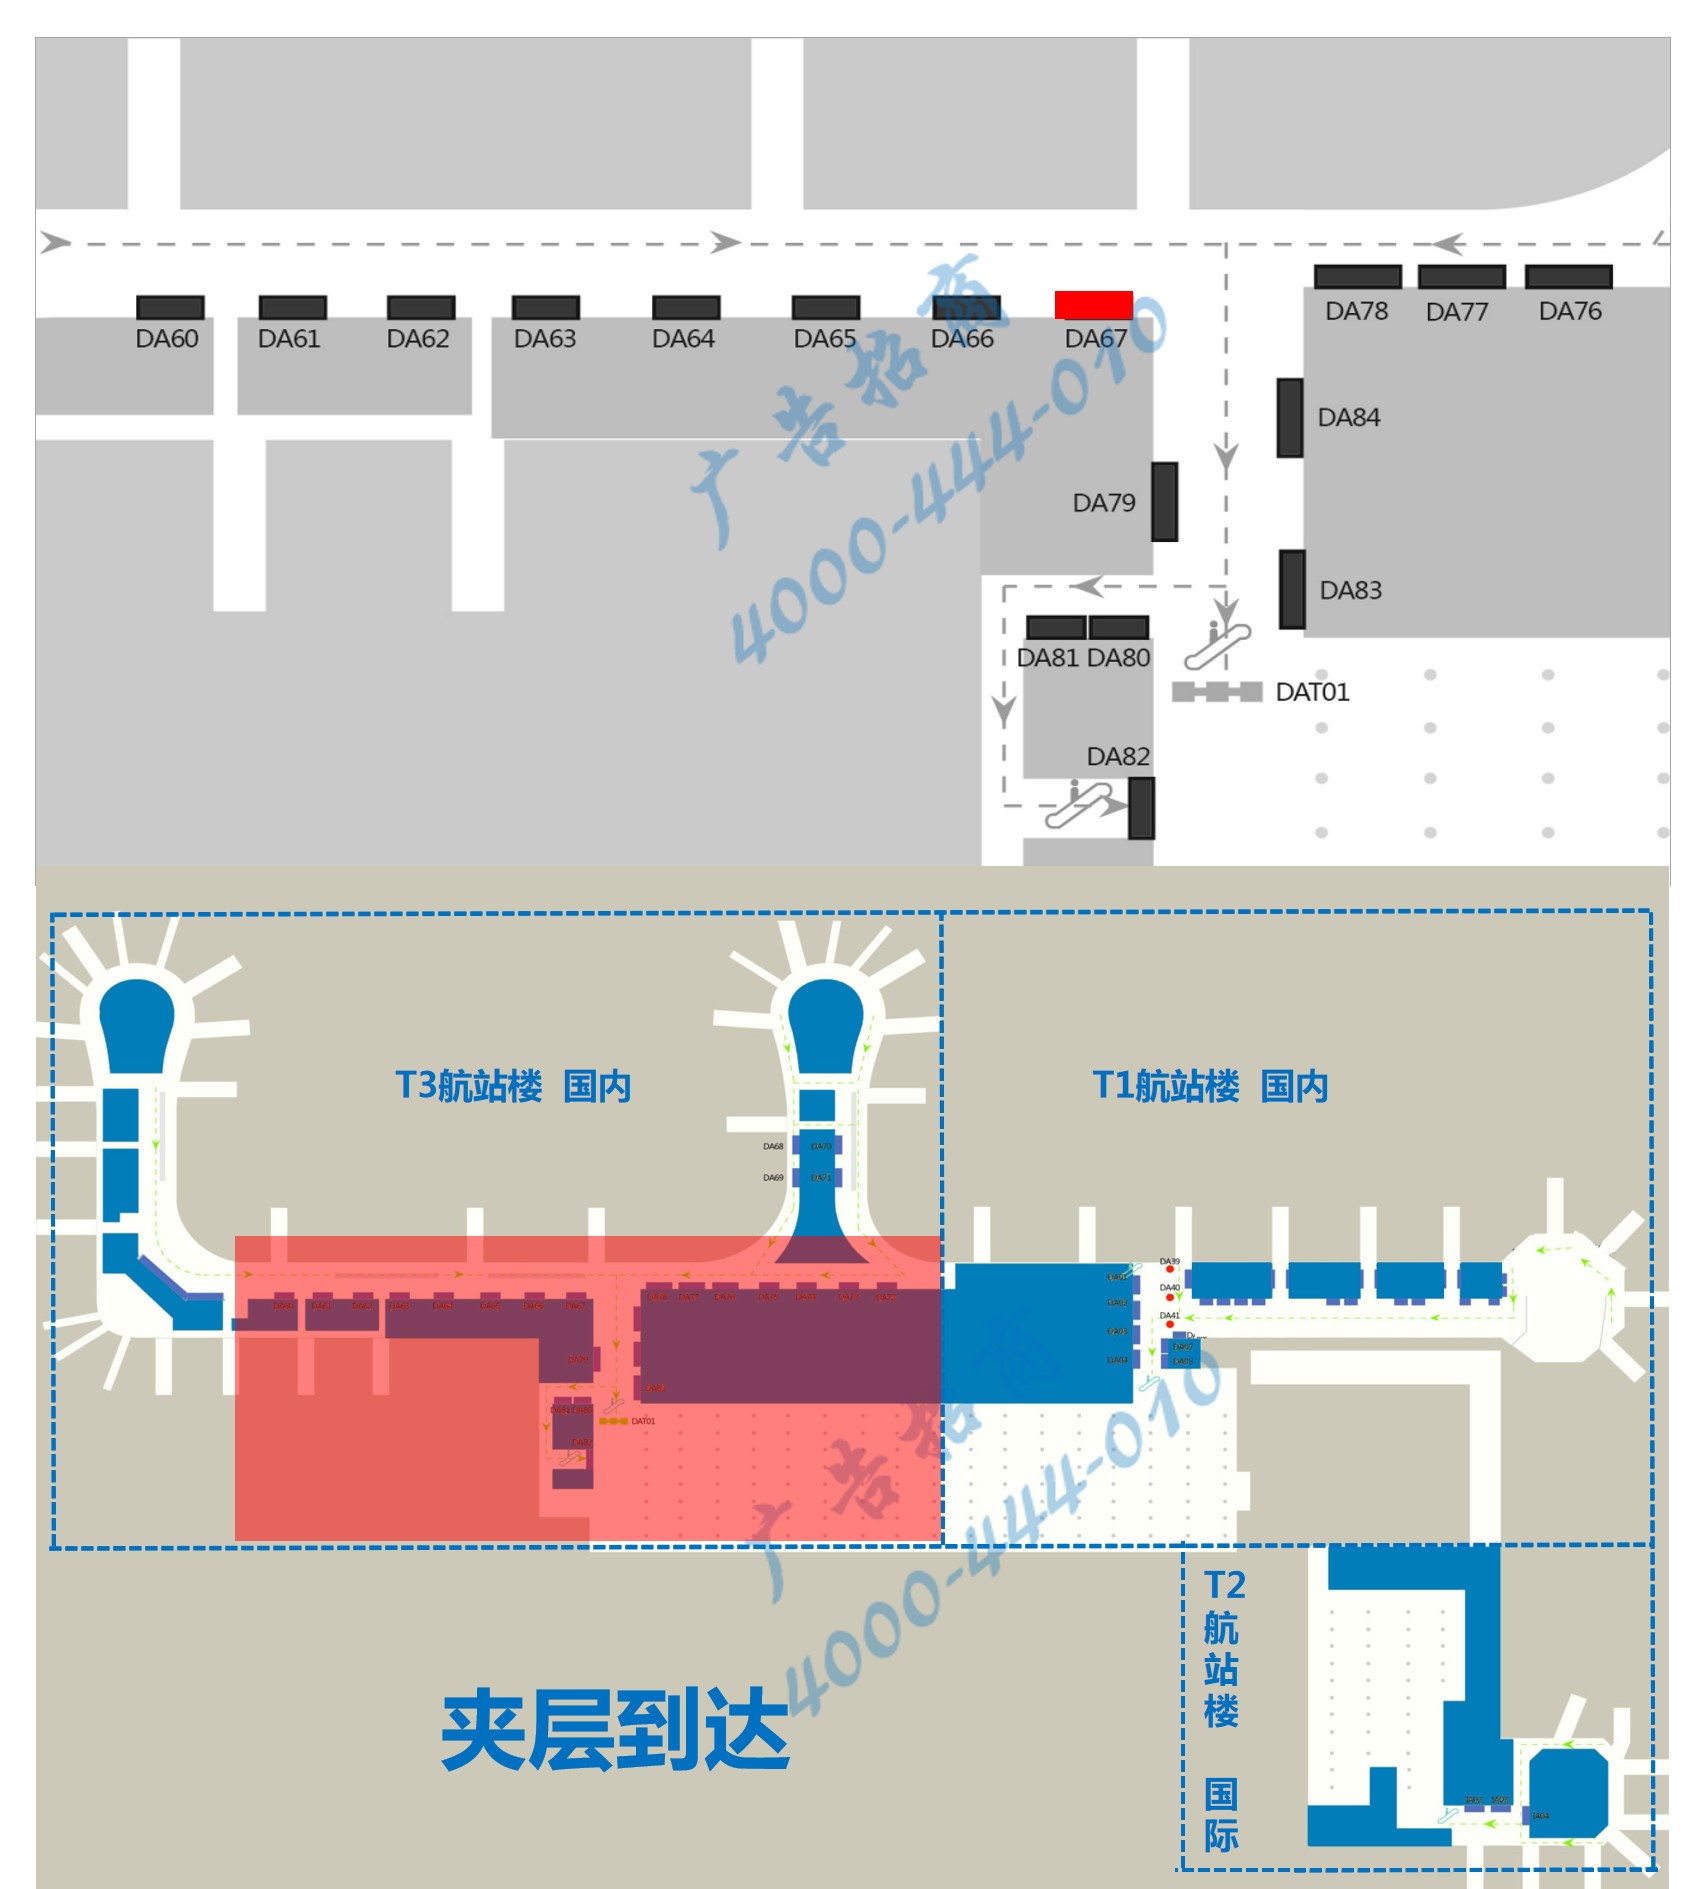 杭州机场广告-T3到达通廊自动扶梯旁灯箱DA67点位图